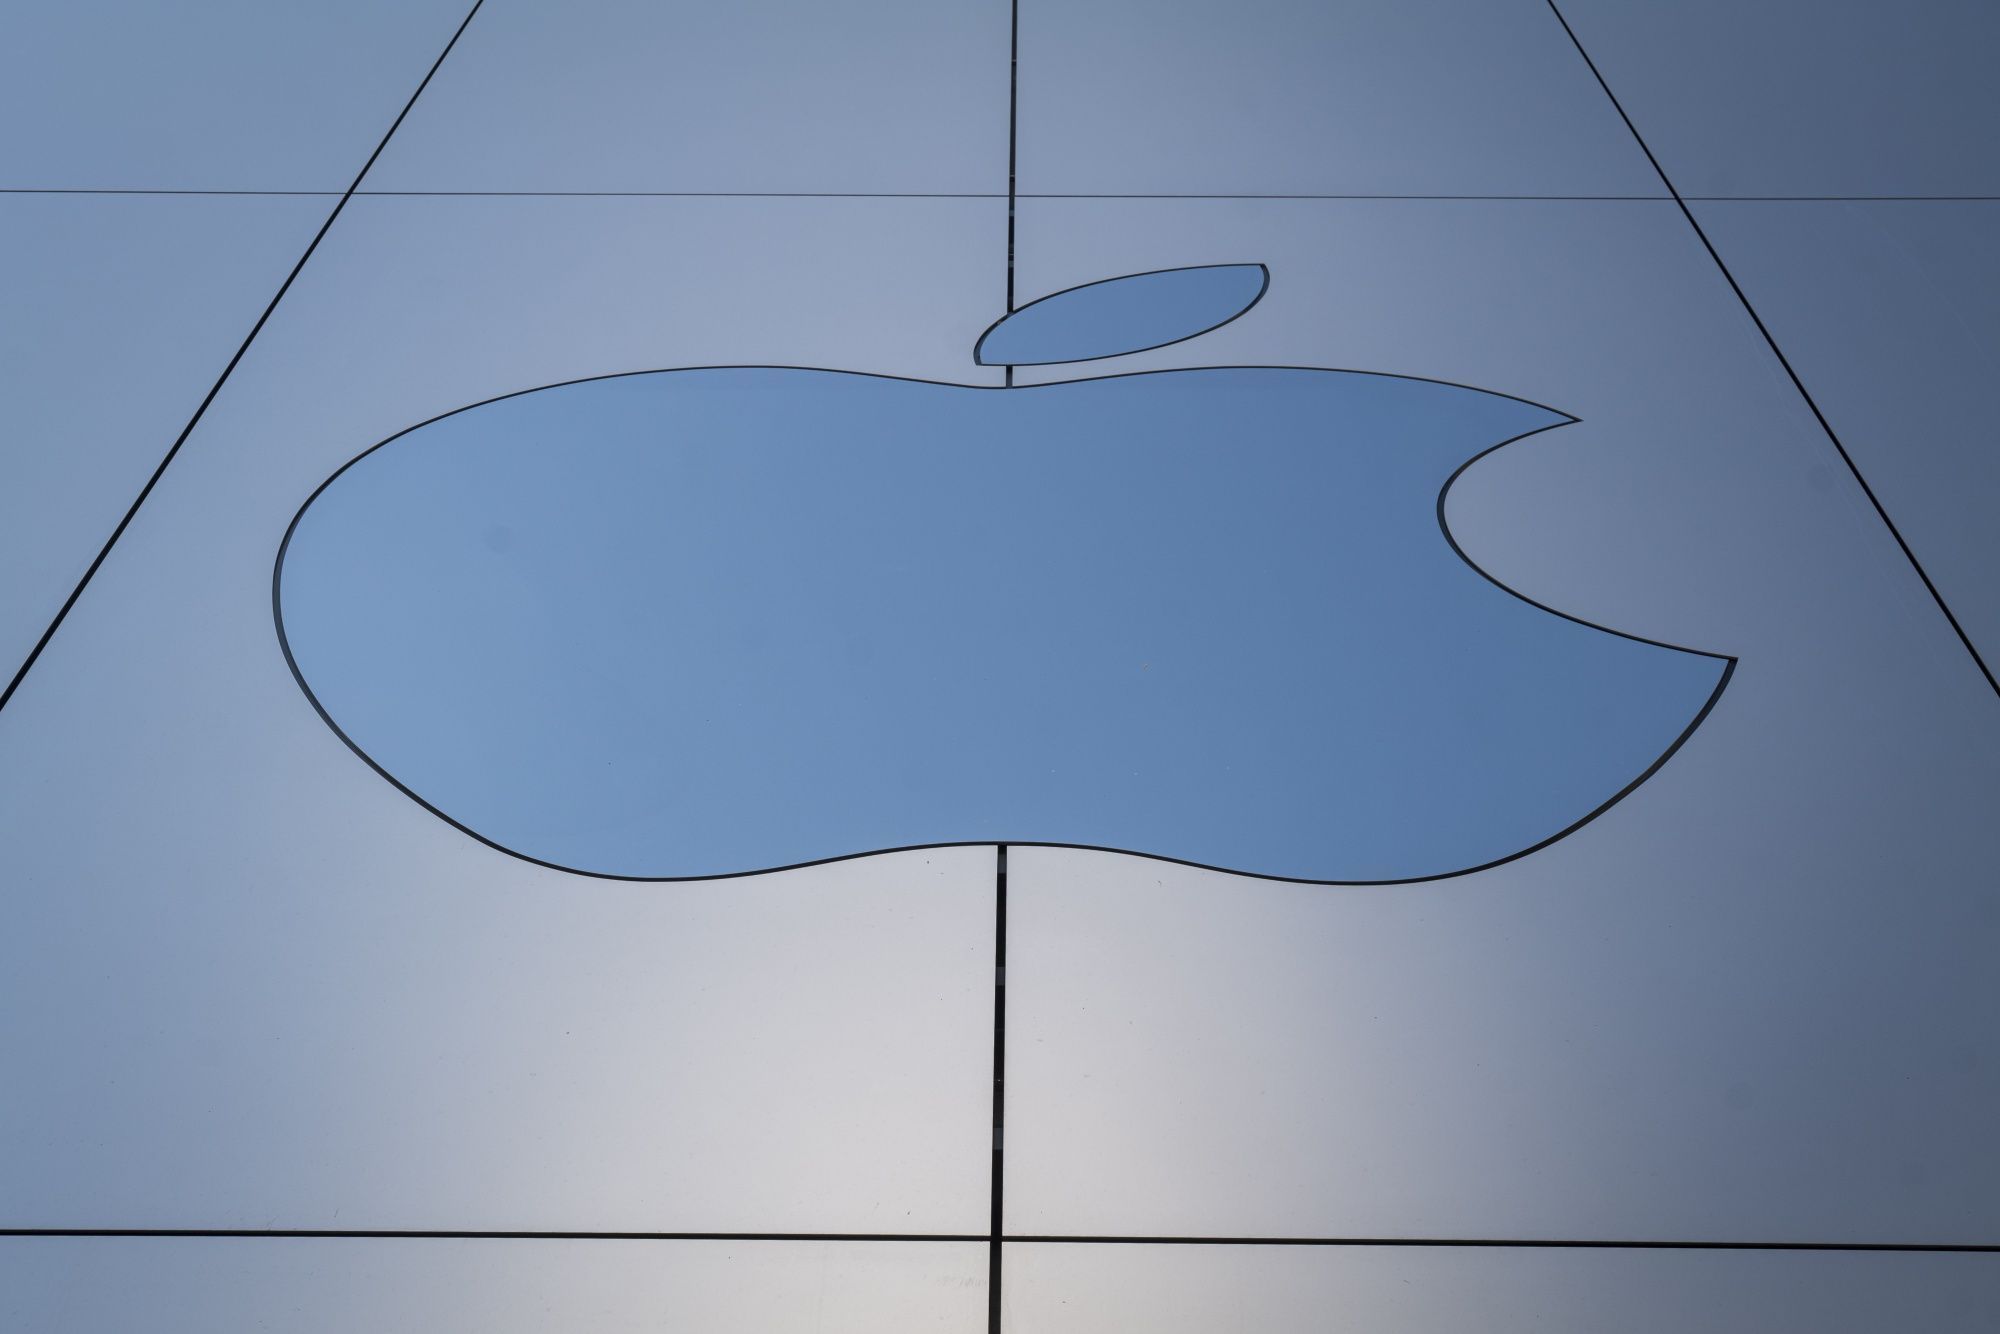 Apple quản chế đối tác thuê sinh viên sản xuất iPhone